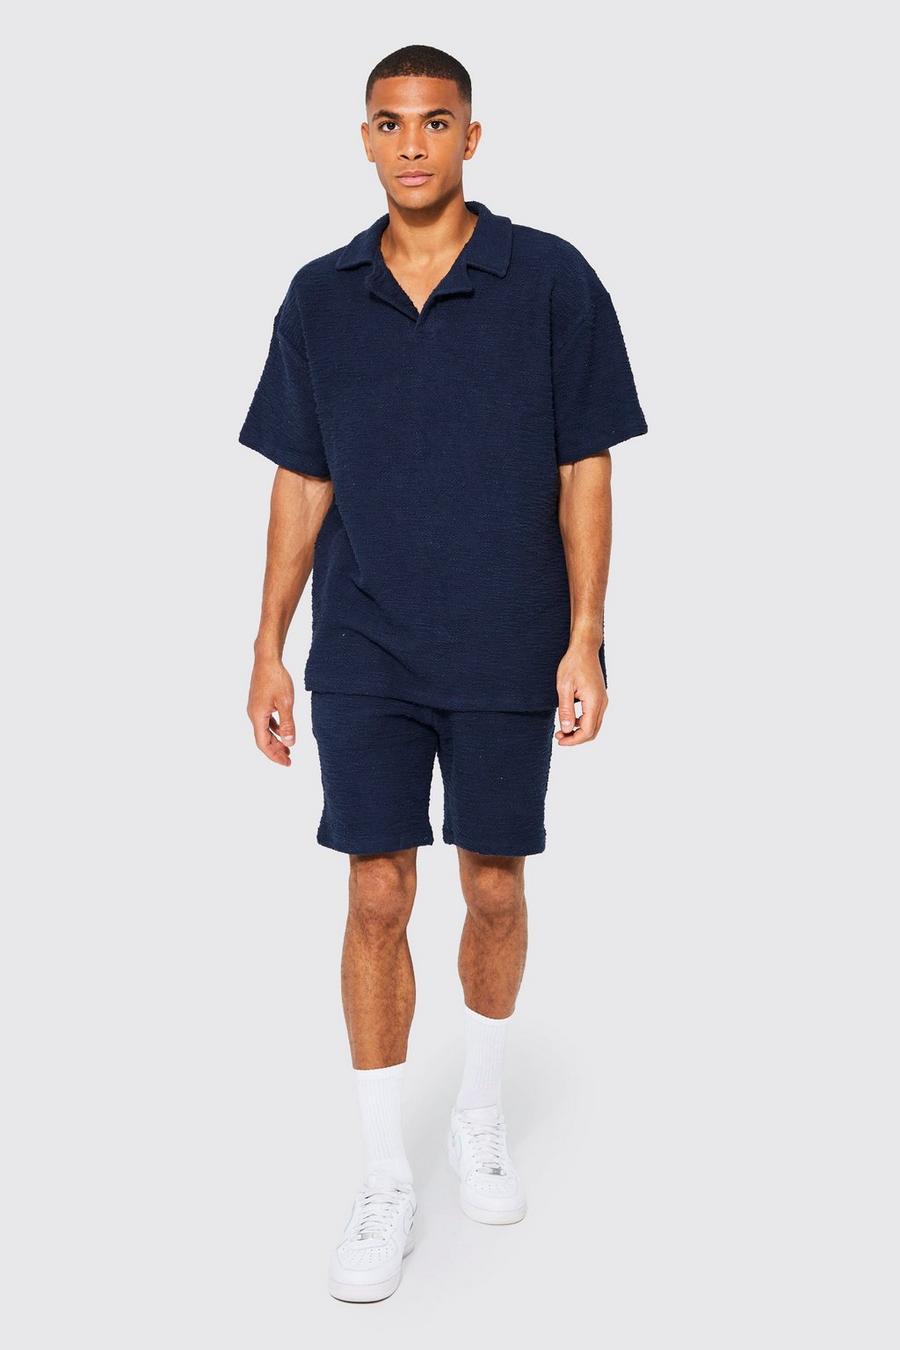 Conjunto de pantalón corto y polo texturizado con solapas, Navy azul marino